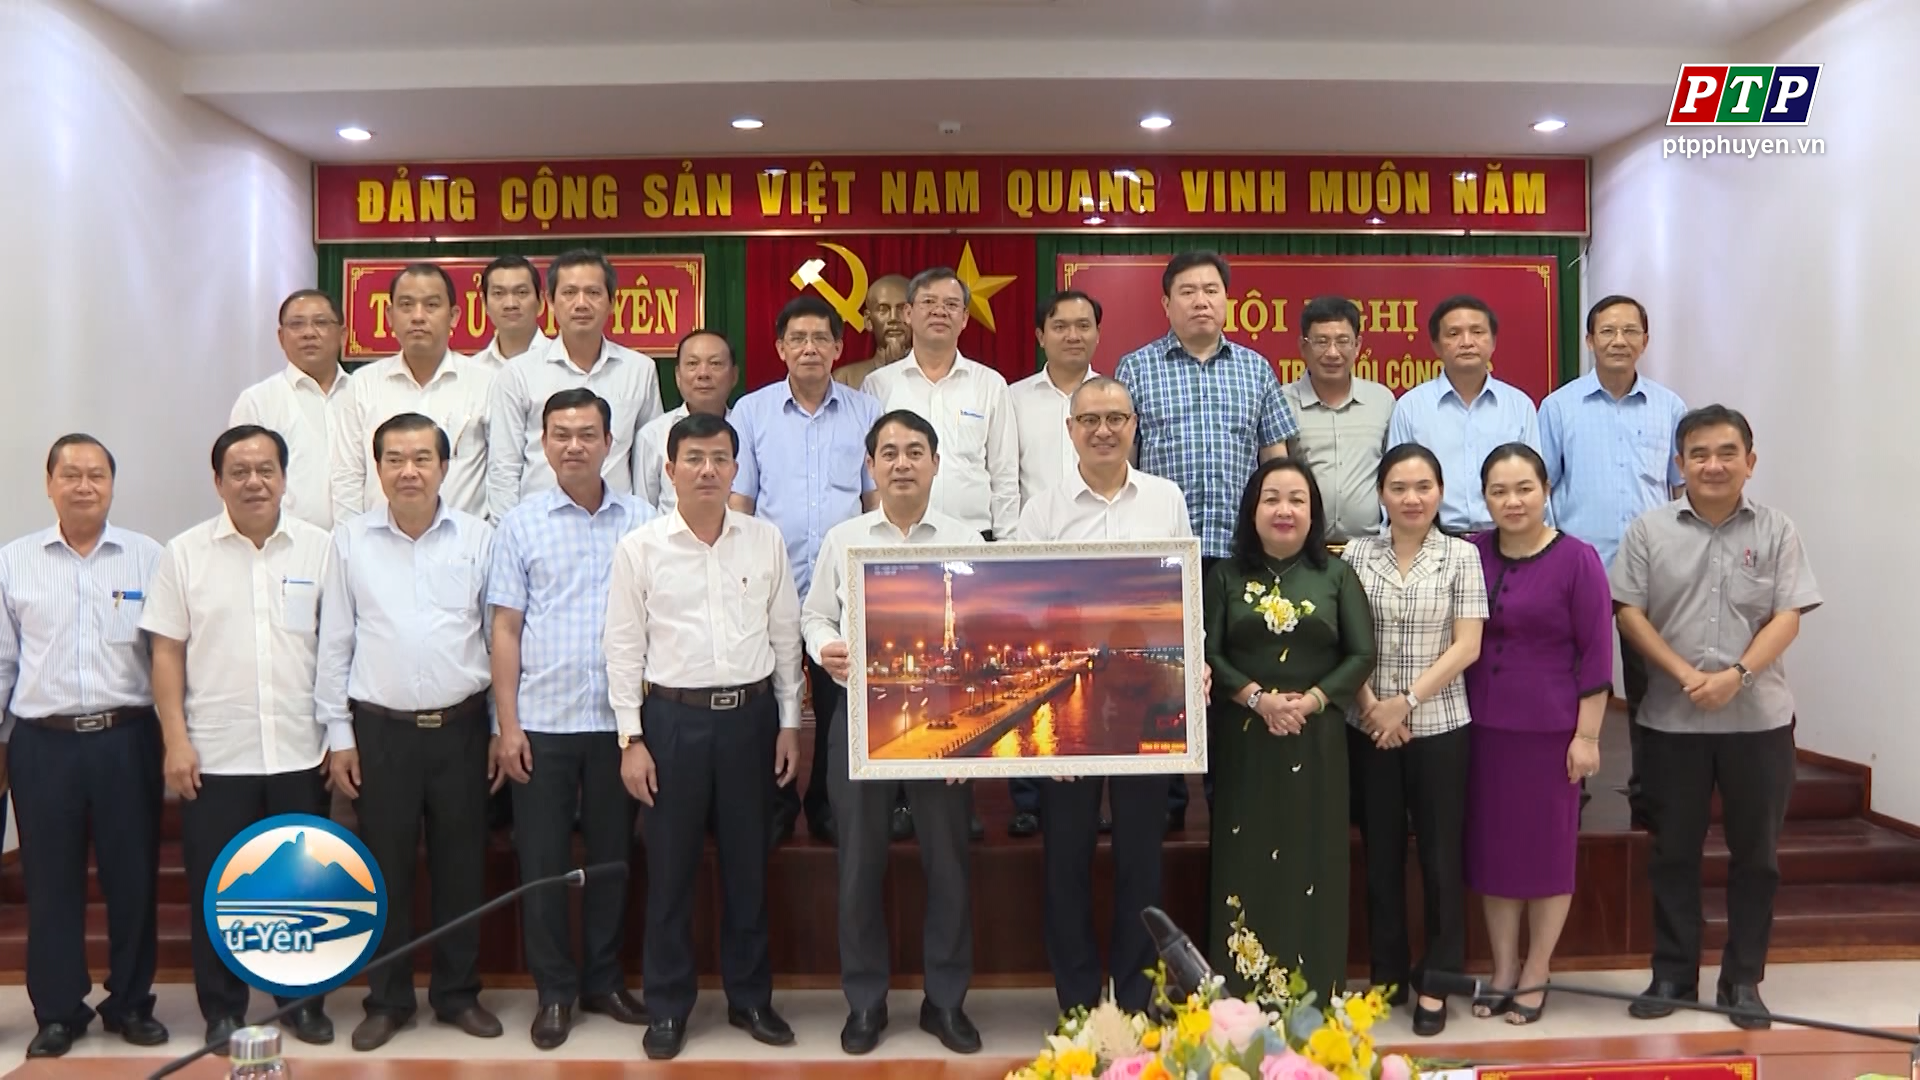 Hội nghị nghiên cứu, trao đổi công tác giữa tỉnh Phú Yên và tỉnh Hậu Giang